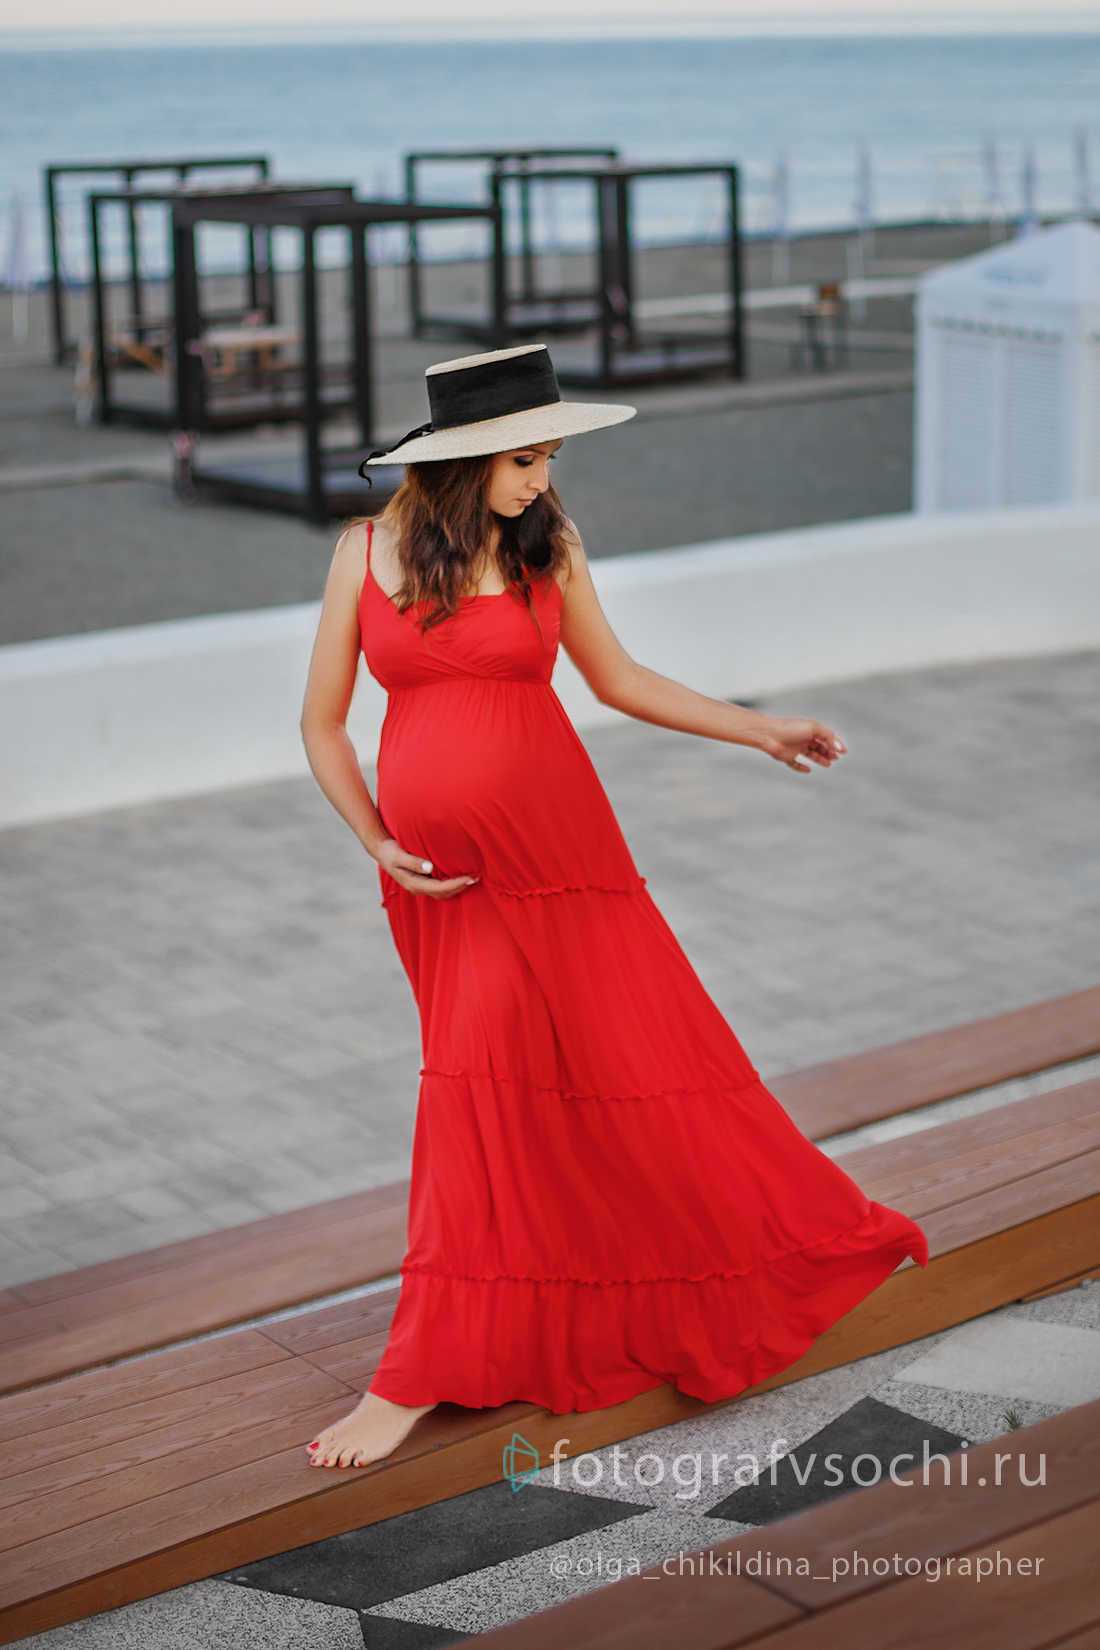 Беременная девушка в красном платье и шляпке прогуливается у моря